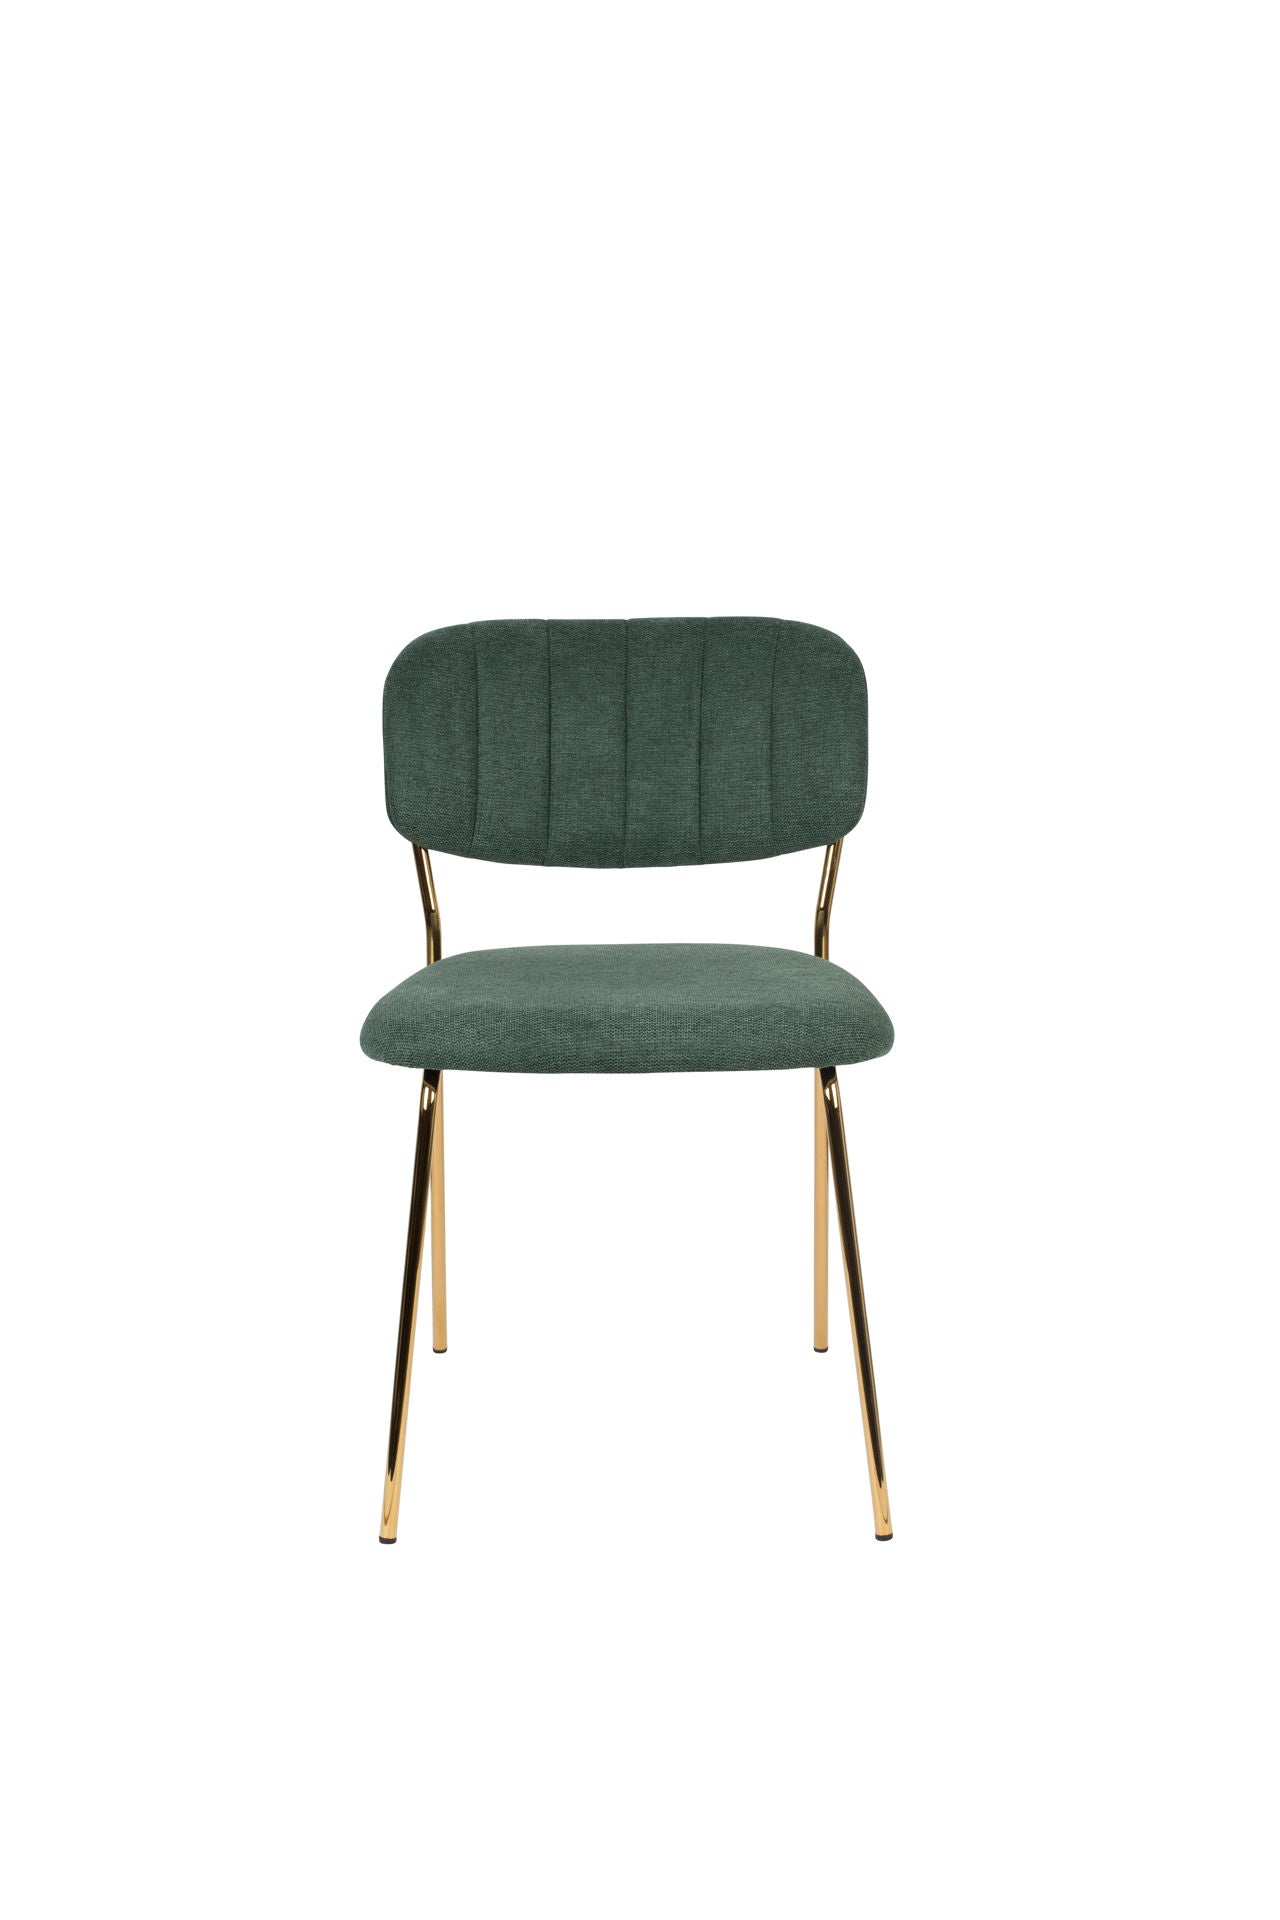 Nancy's Fishersville Chair - Rétro - Or, Vert foncé - Polyester, Acier, Contreplaqué - 56 cm x 49 cm x 78 cm